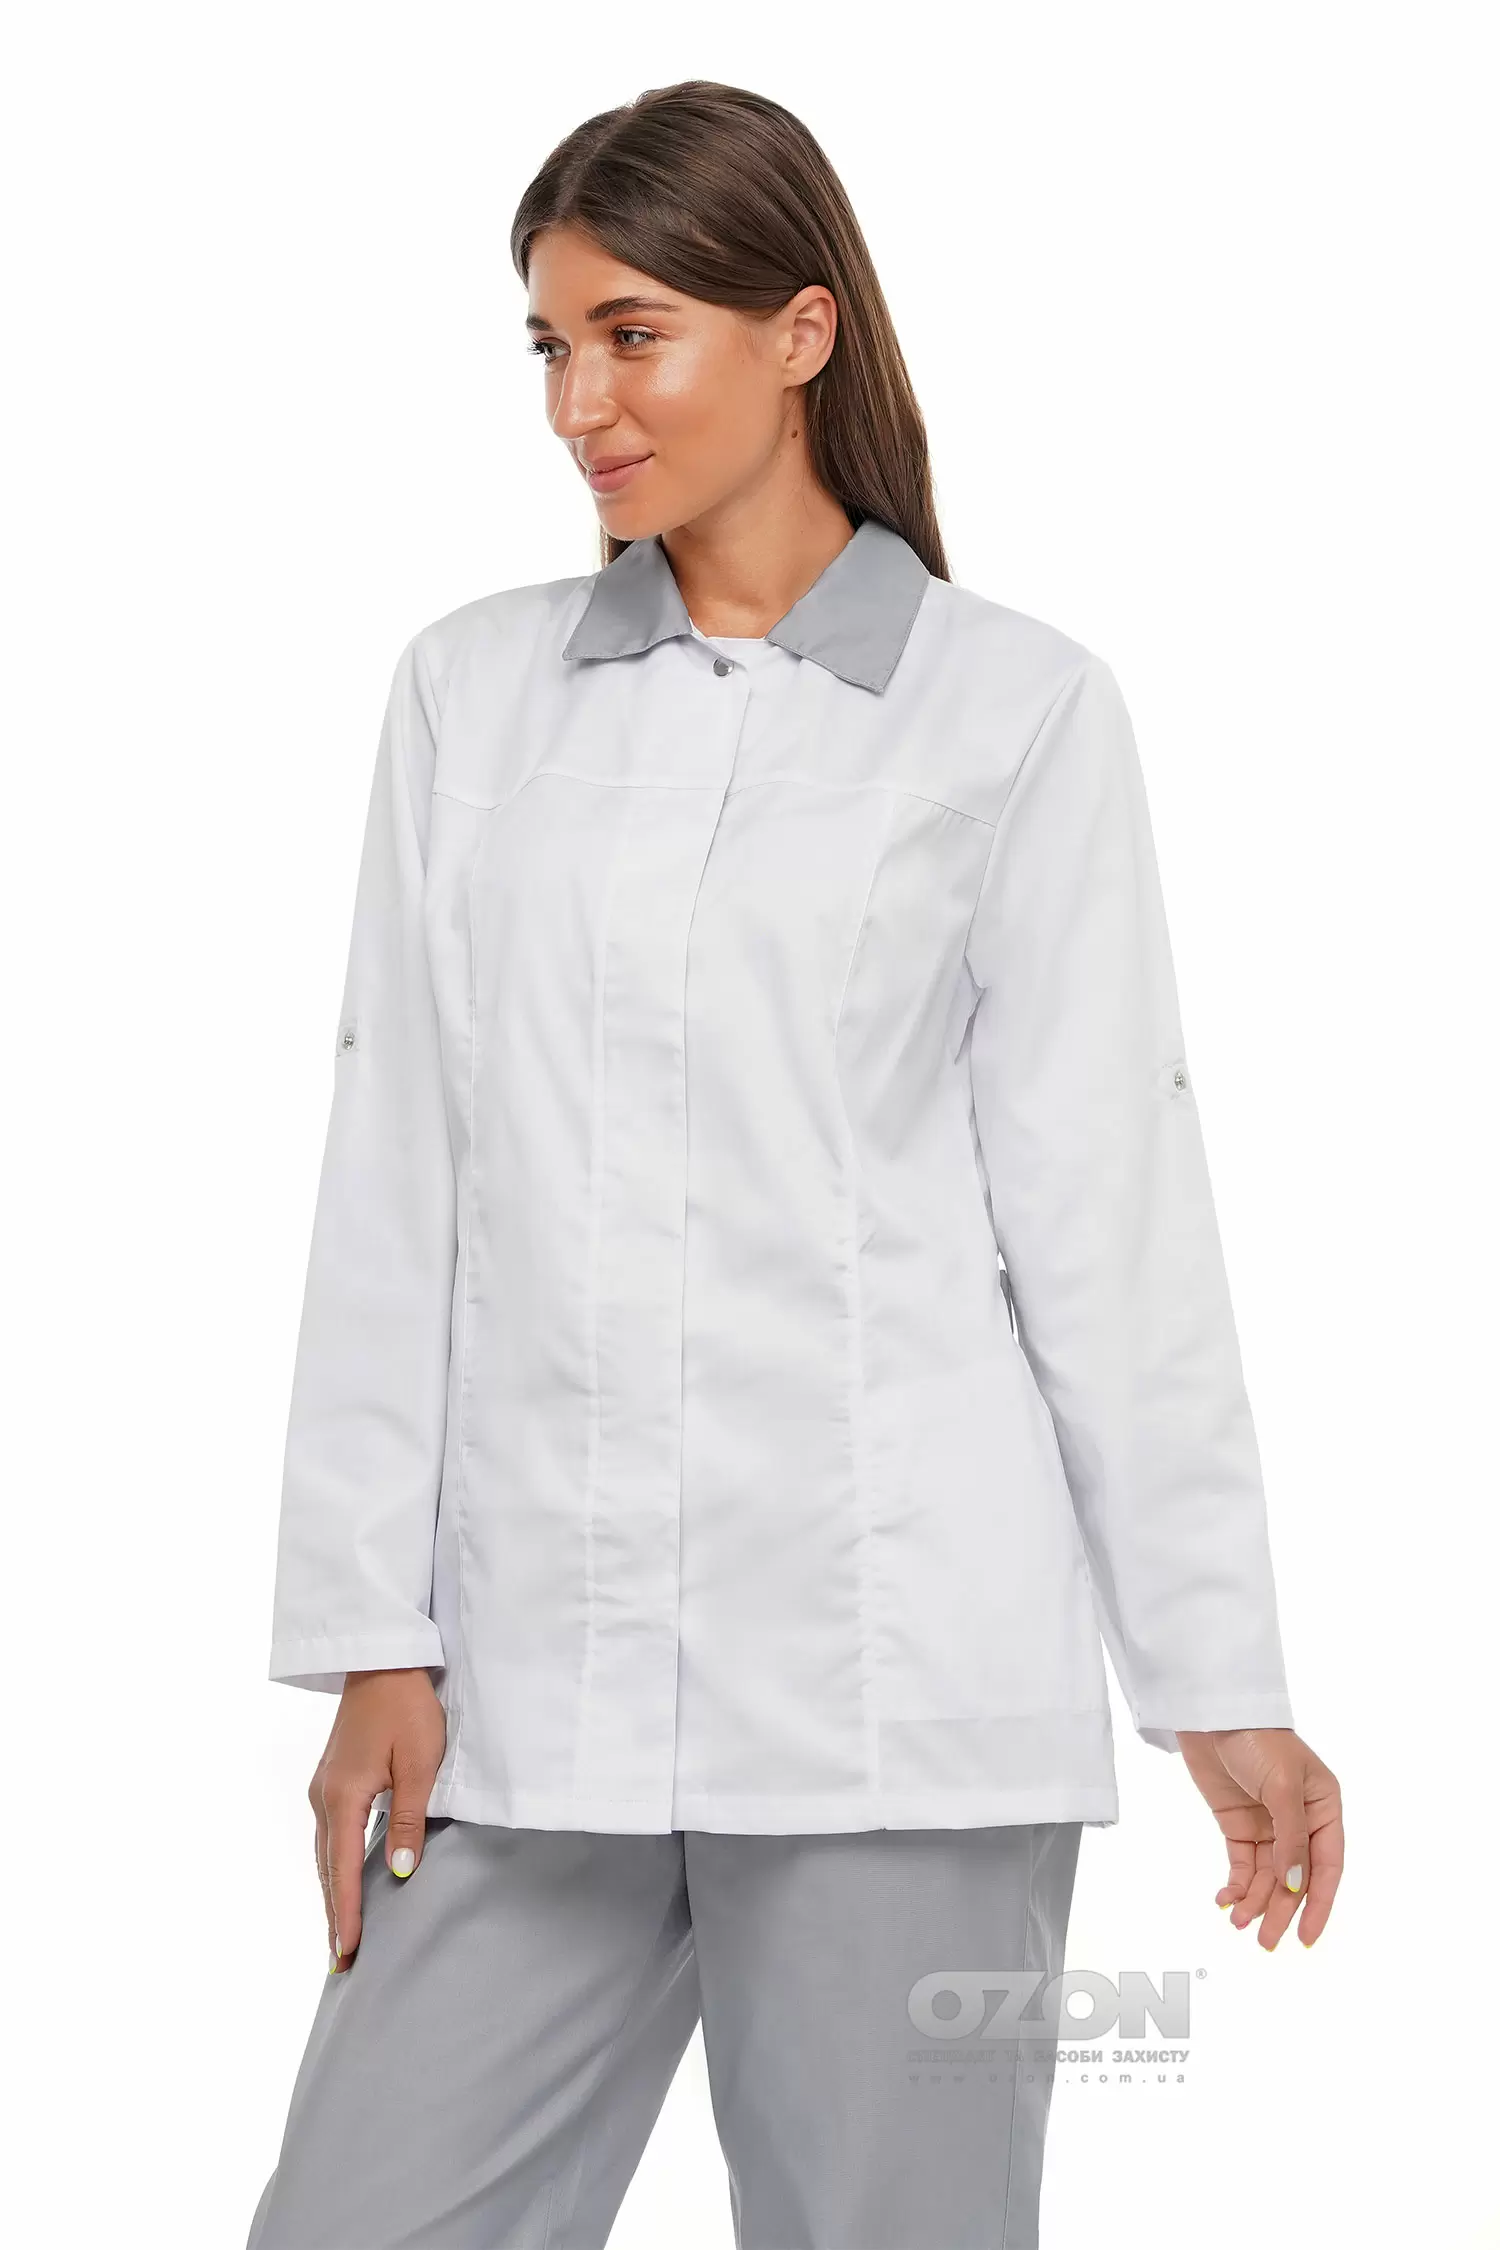 Куртка женская Органик К5, белая - Фото 1